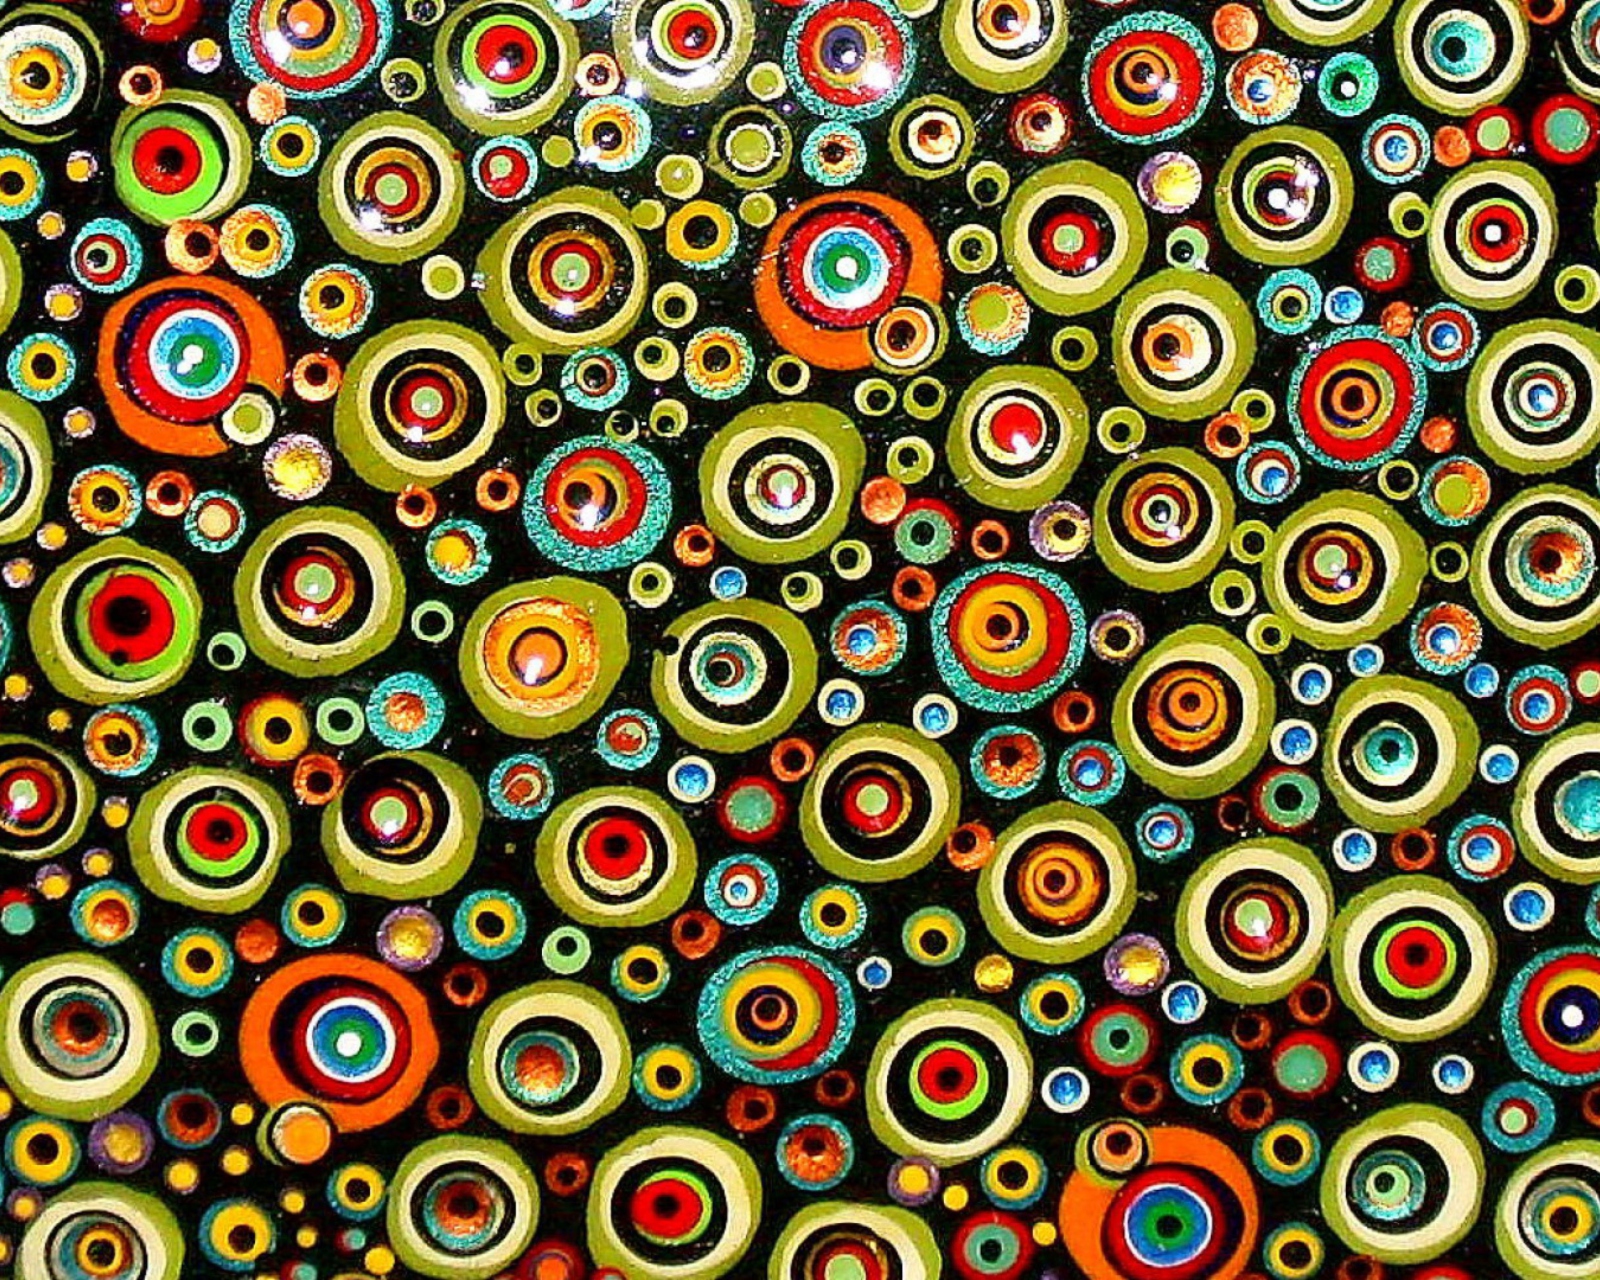 Das Circle Abstract Wallpaper 1600x1280